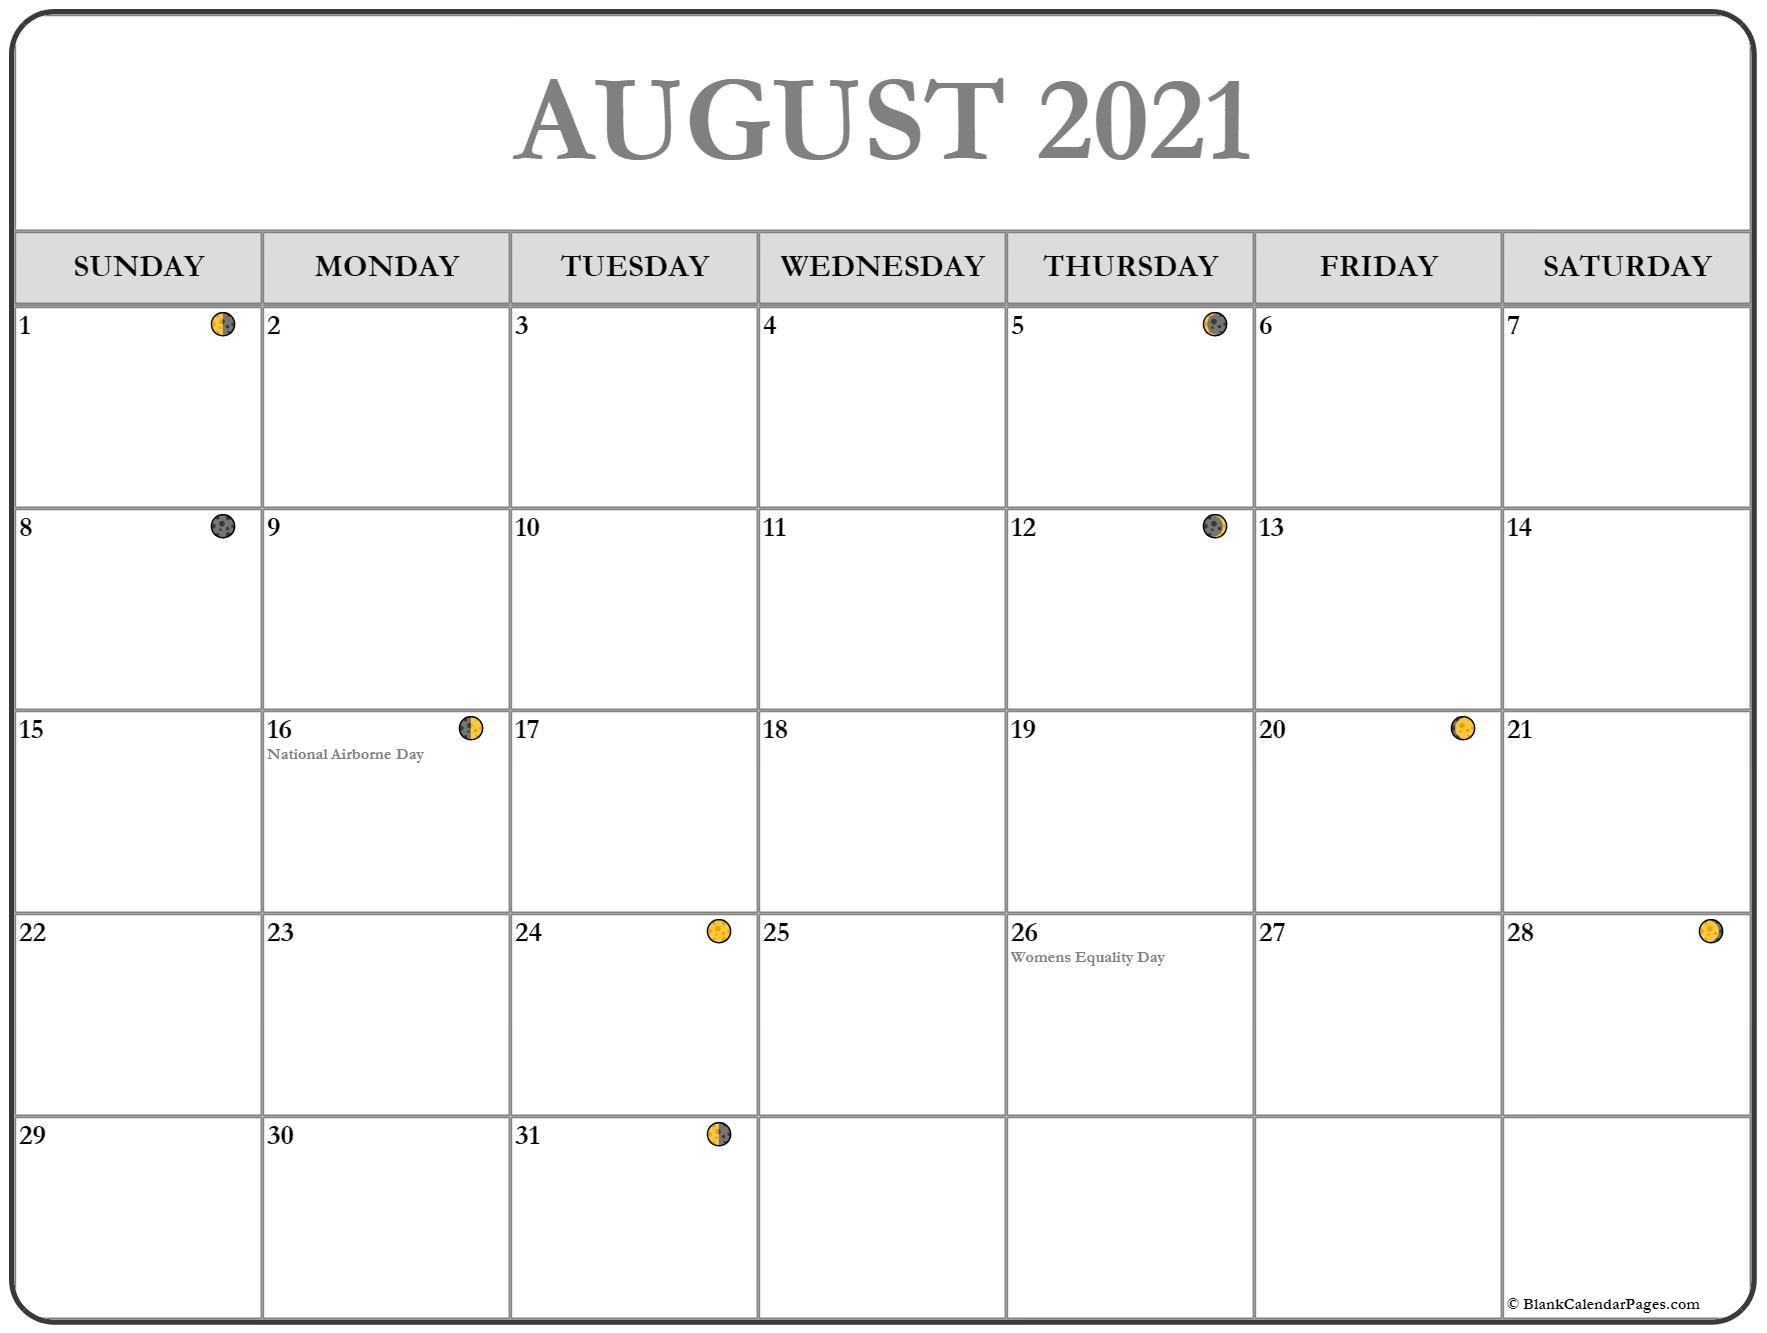 Catch Fishing Lunar Calendar August 2021